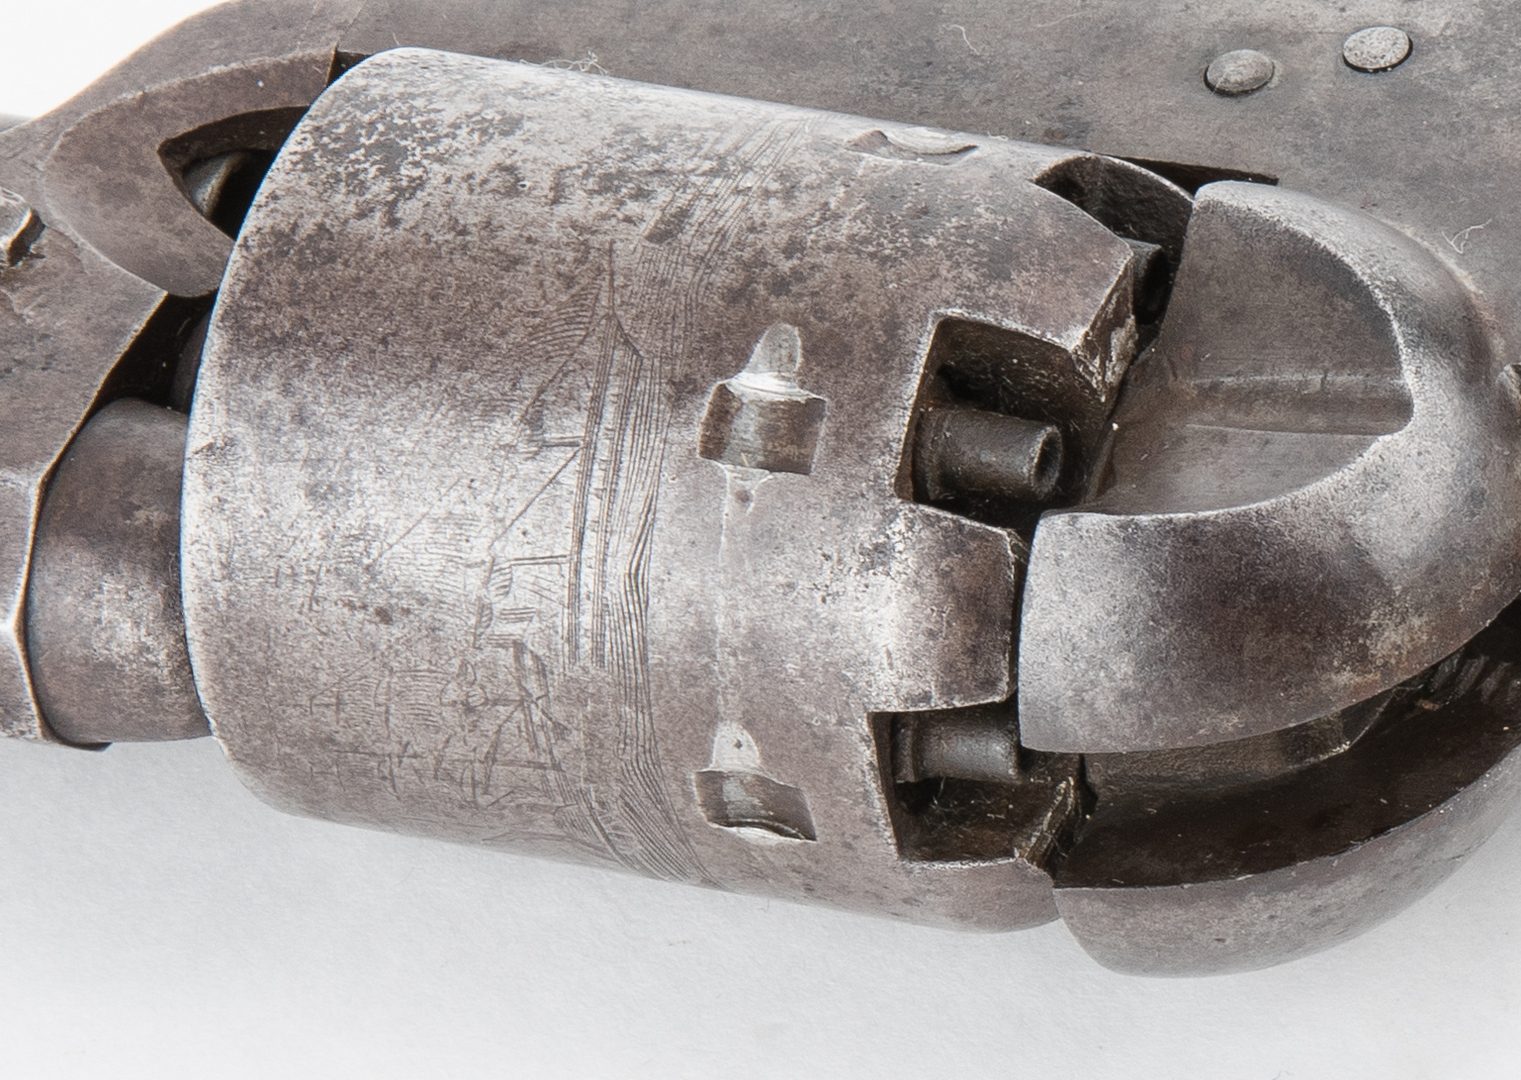 Lot 312: Civil War Era Colt Model 1851 Navy revolver, .36 Caliber